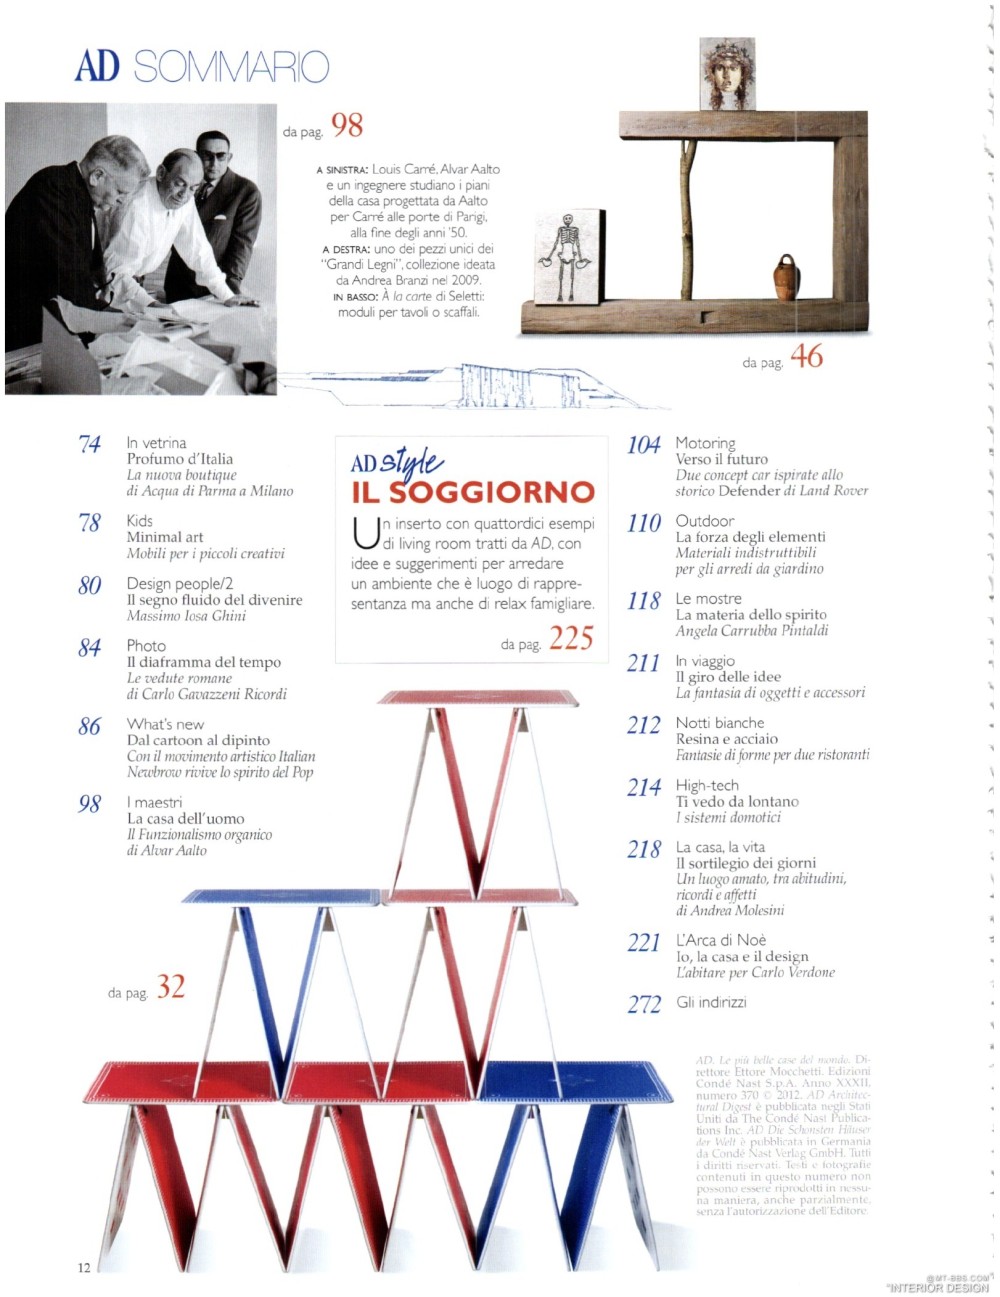 意大利AD 杂志 2012年全年JPG高清版本 全免（上传完毕）_0014.jpg